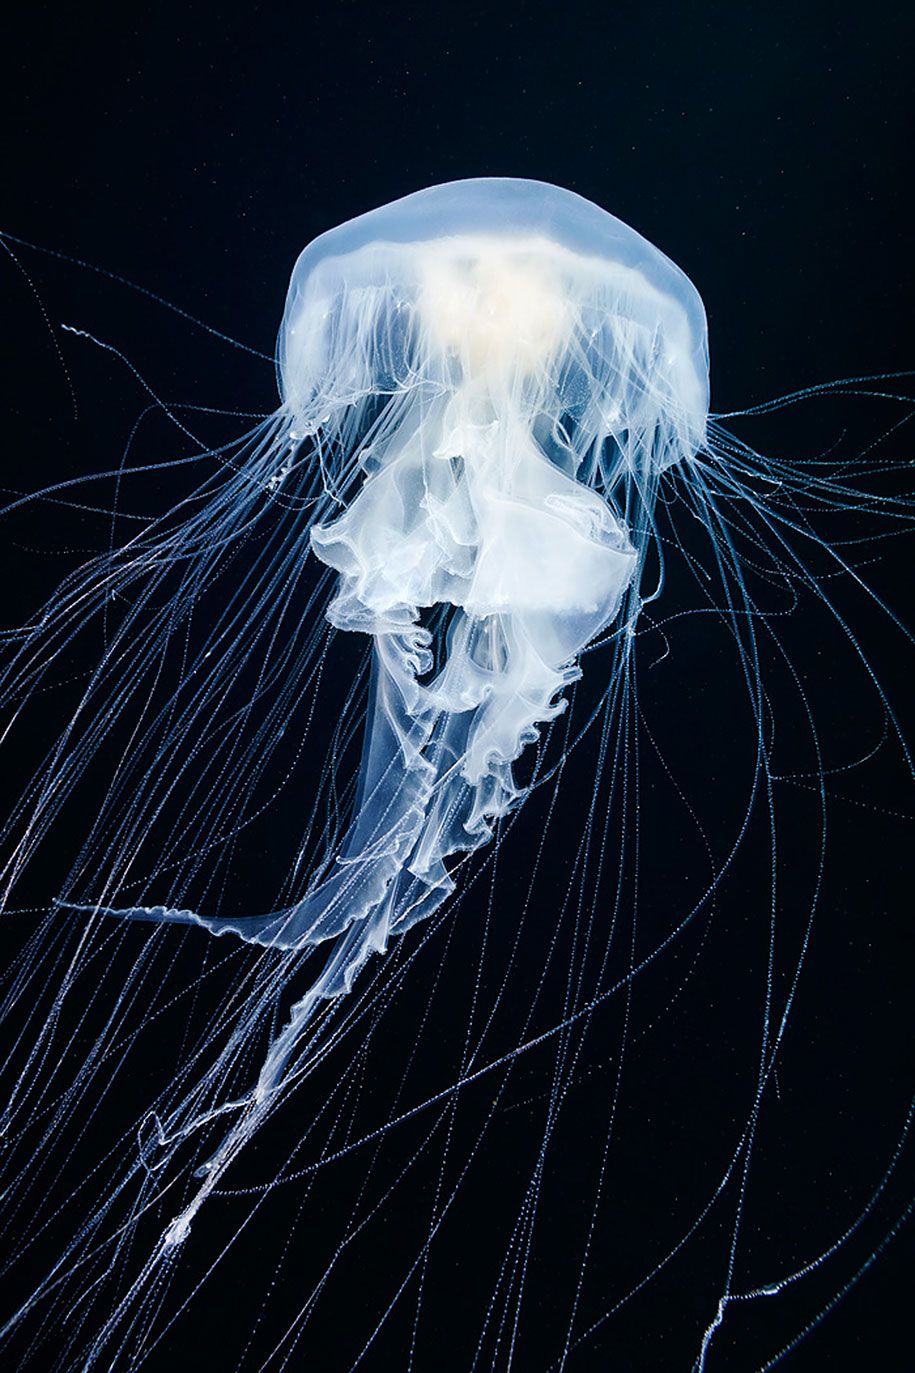 قنديل البحر-التصوير-تحت الماء-الكسندر-سيمينوف -2